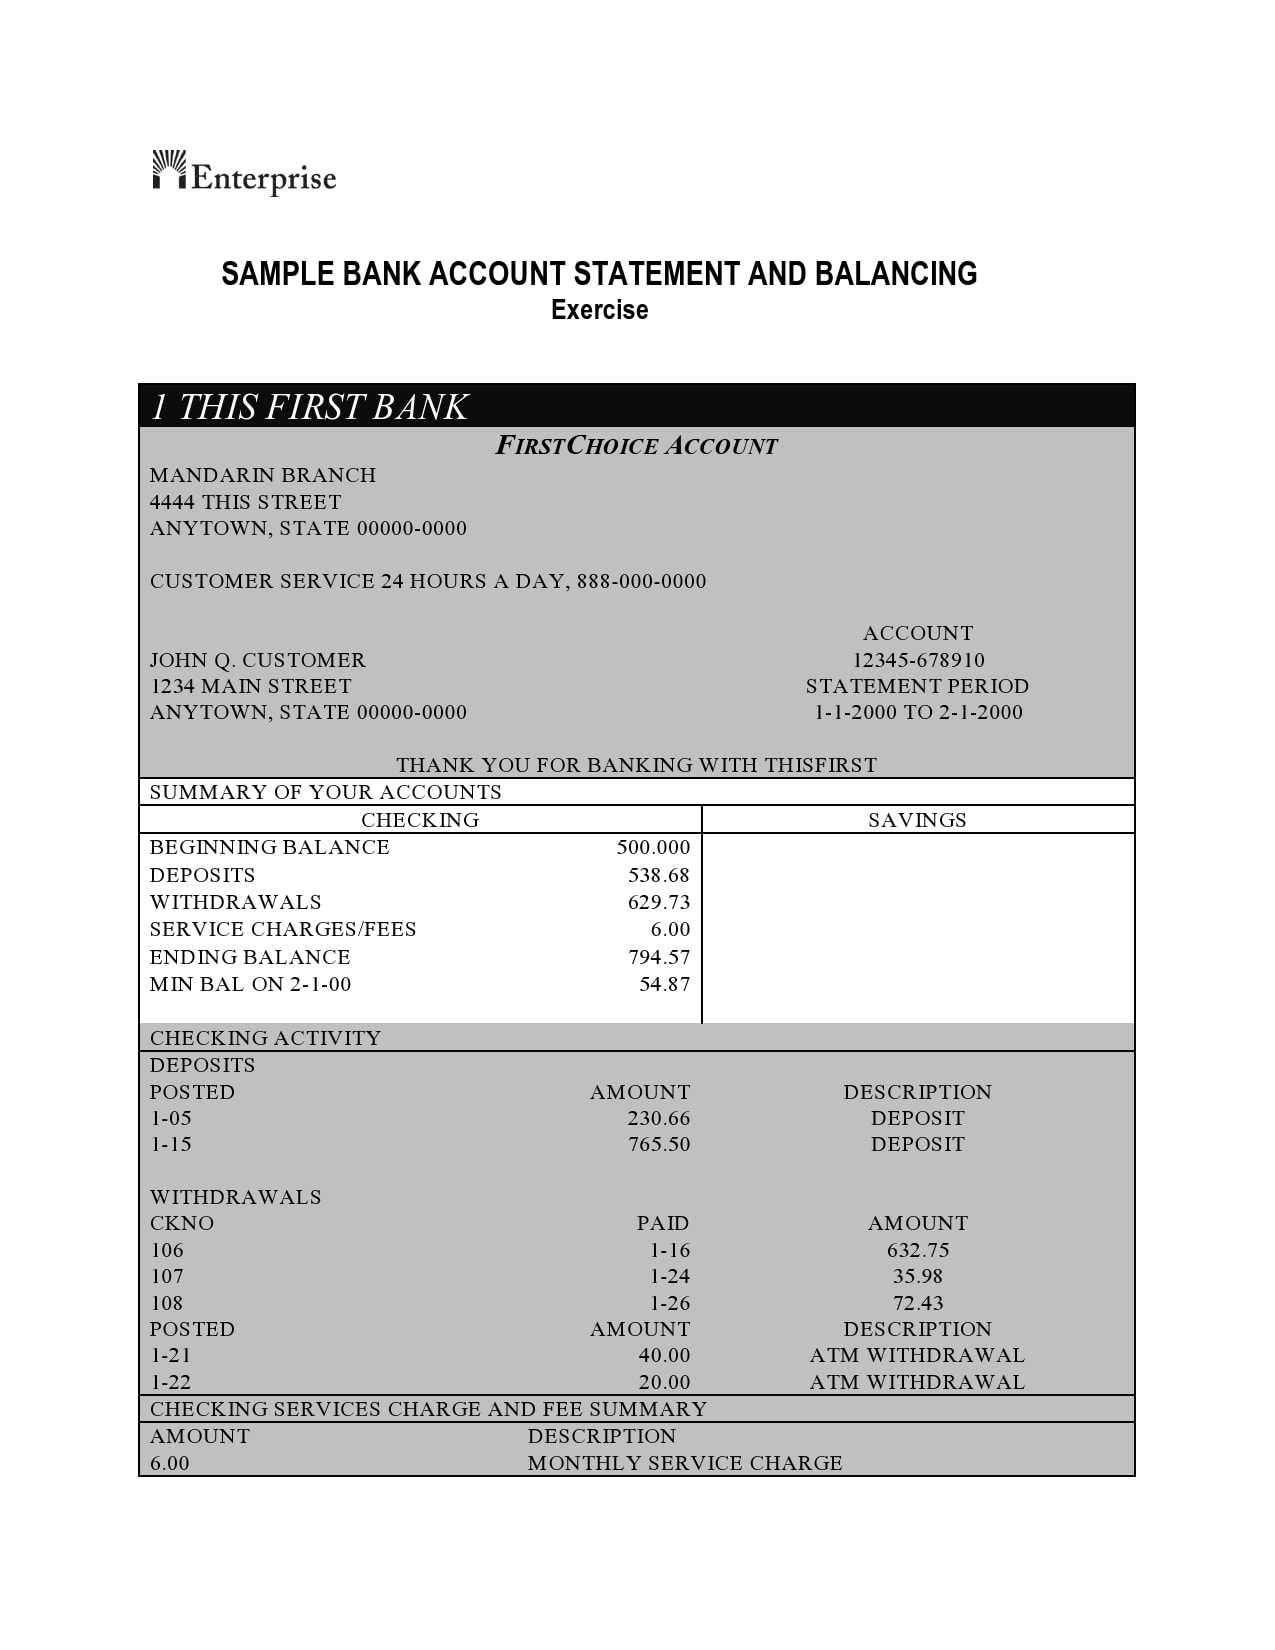 pdf fake bank statement